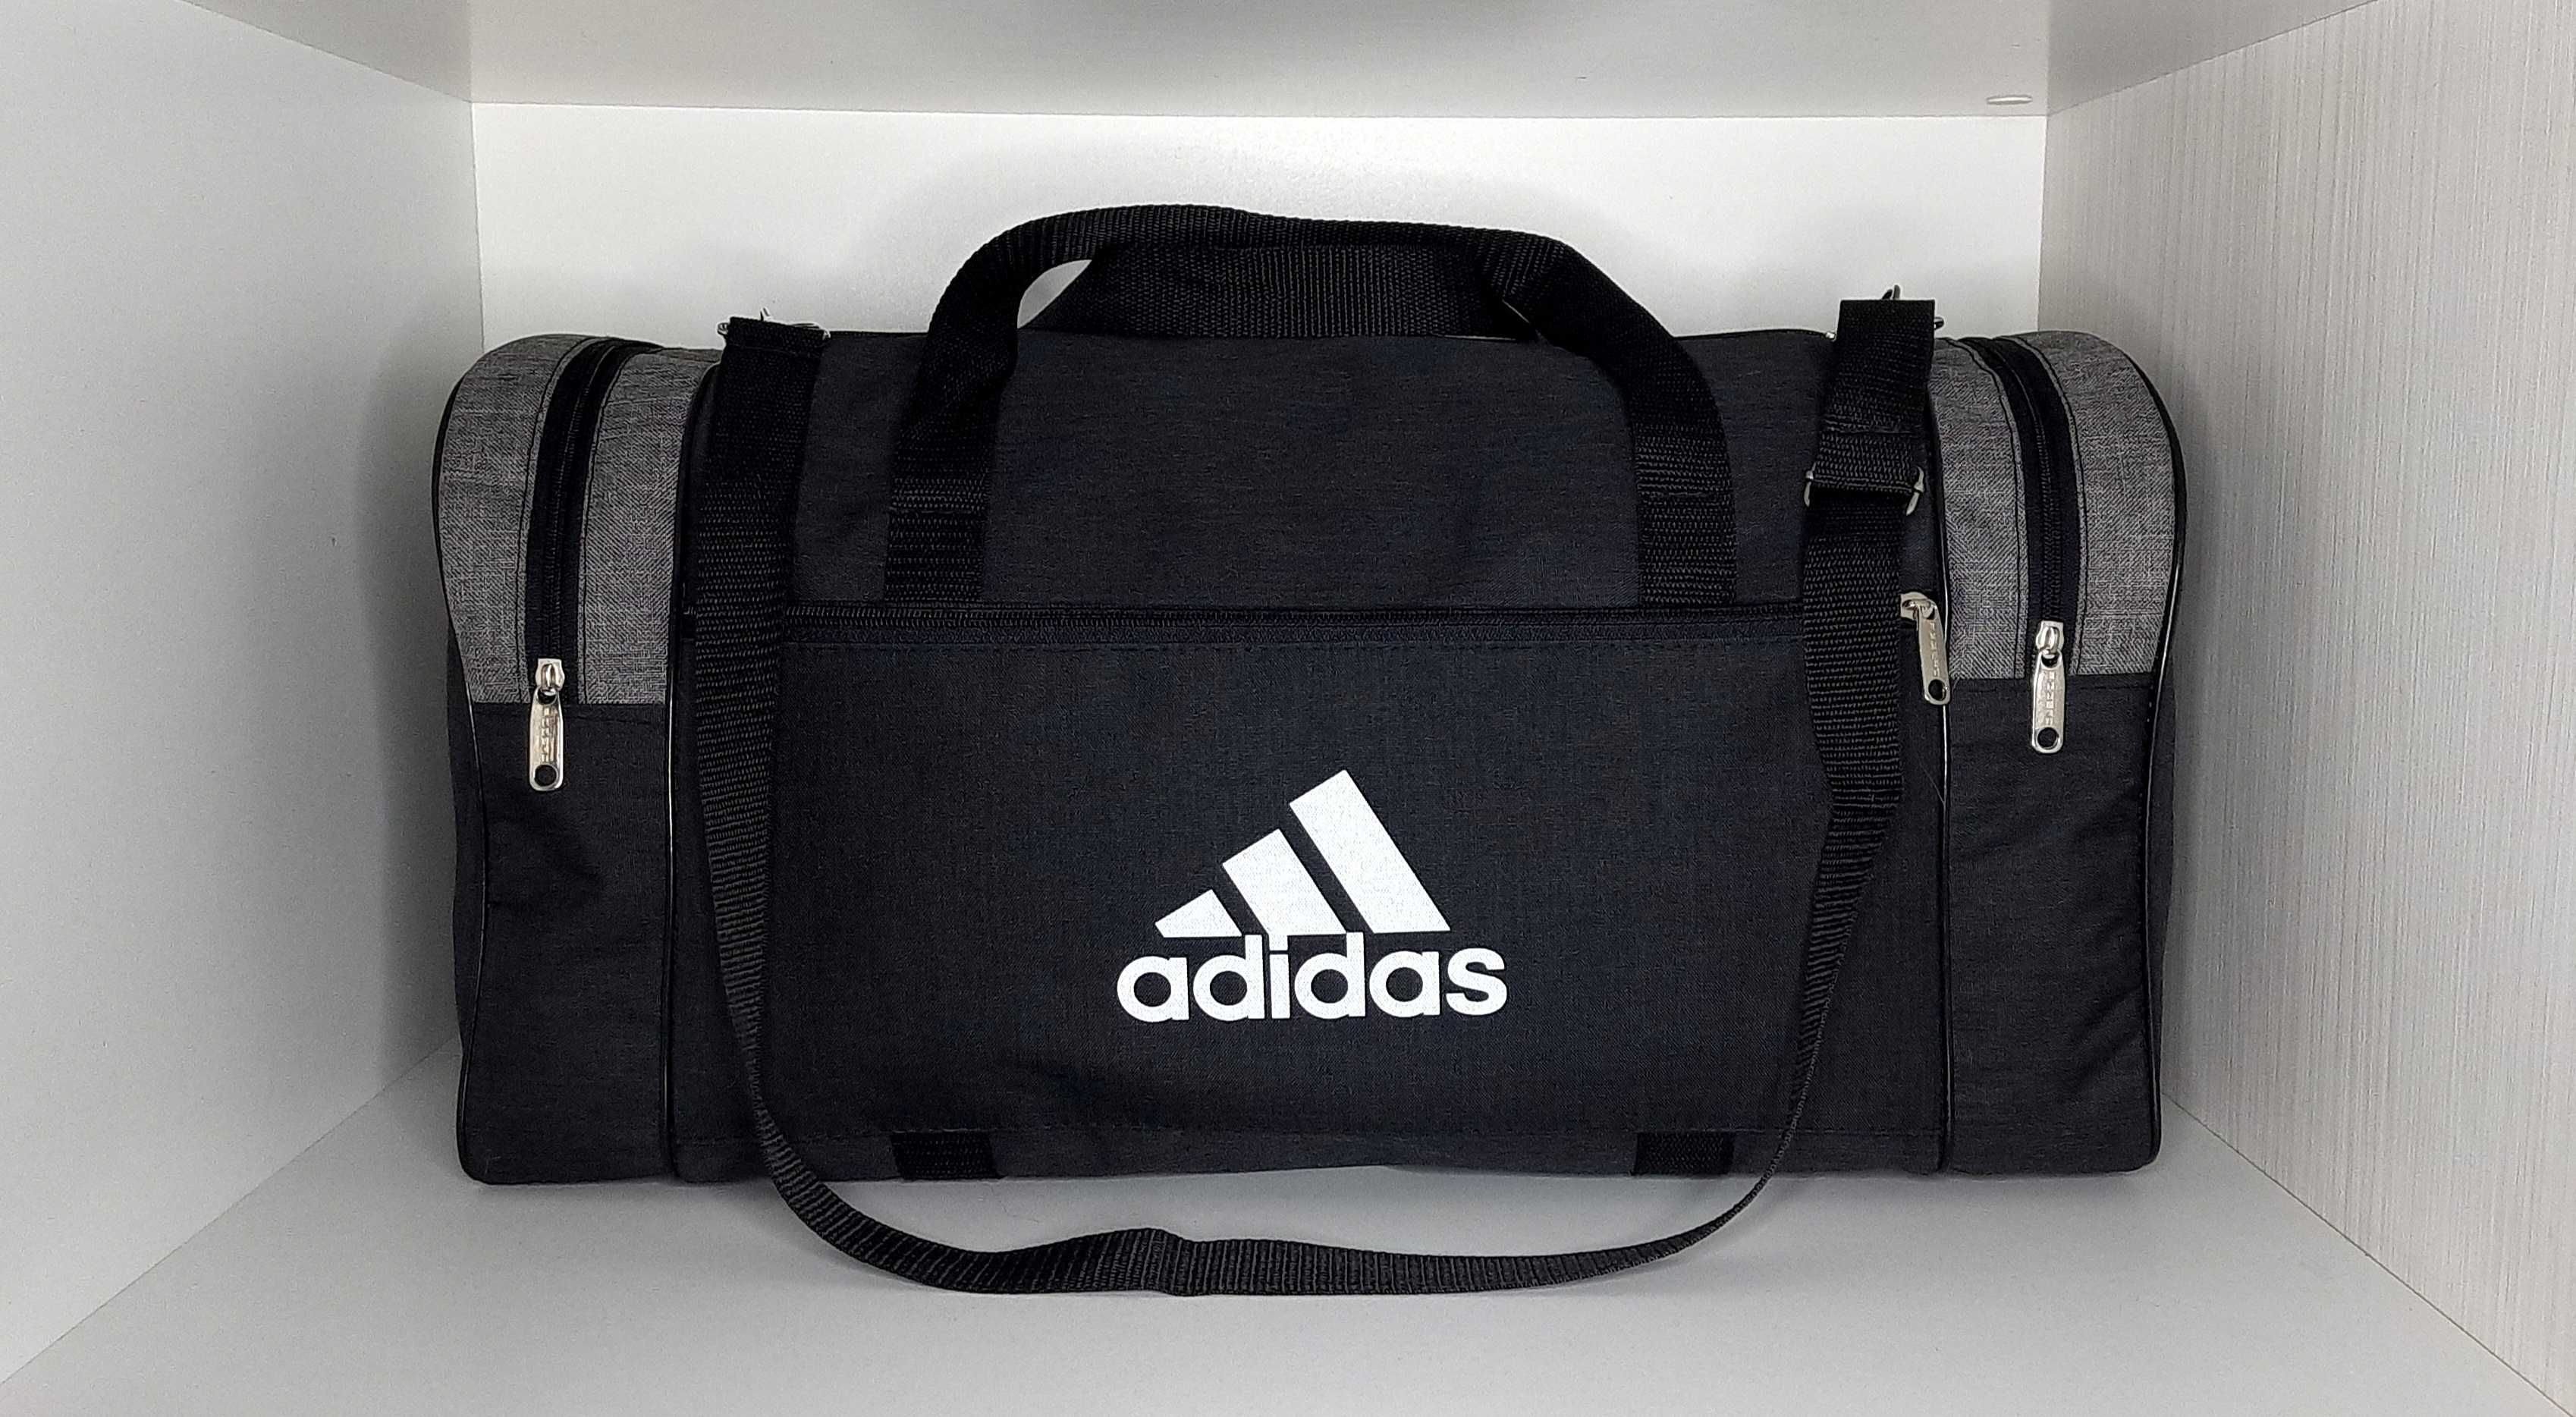 Дорожная,спортивная сумка Adidas.Новая.